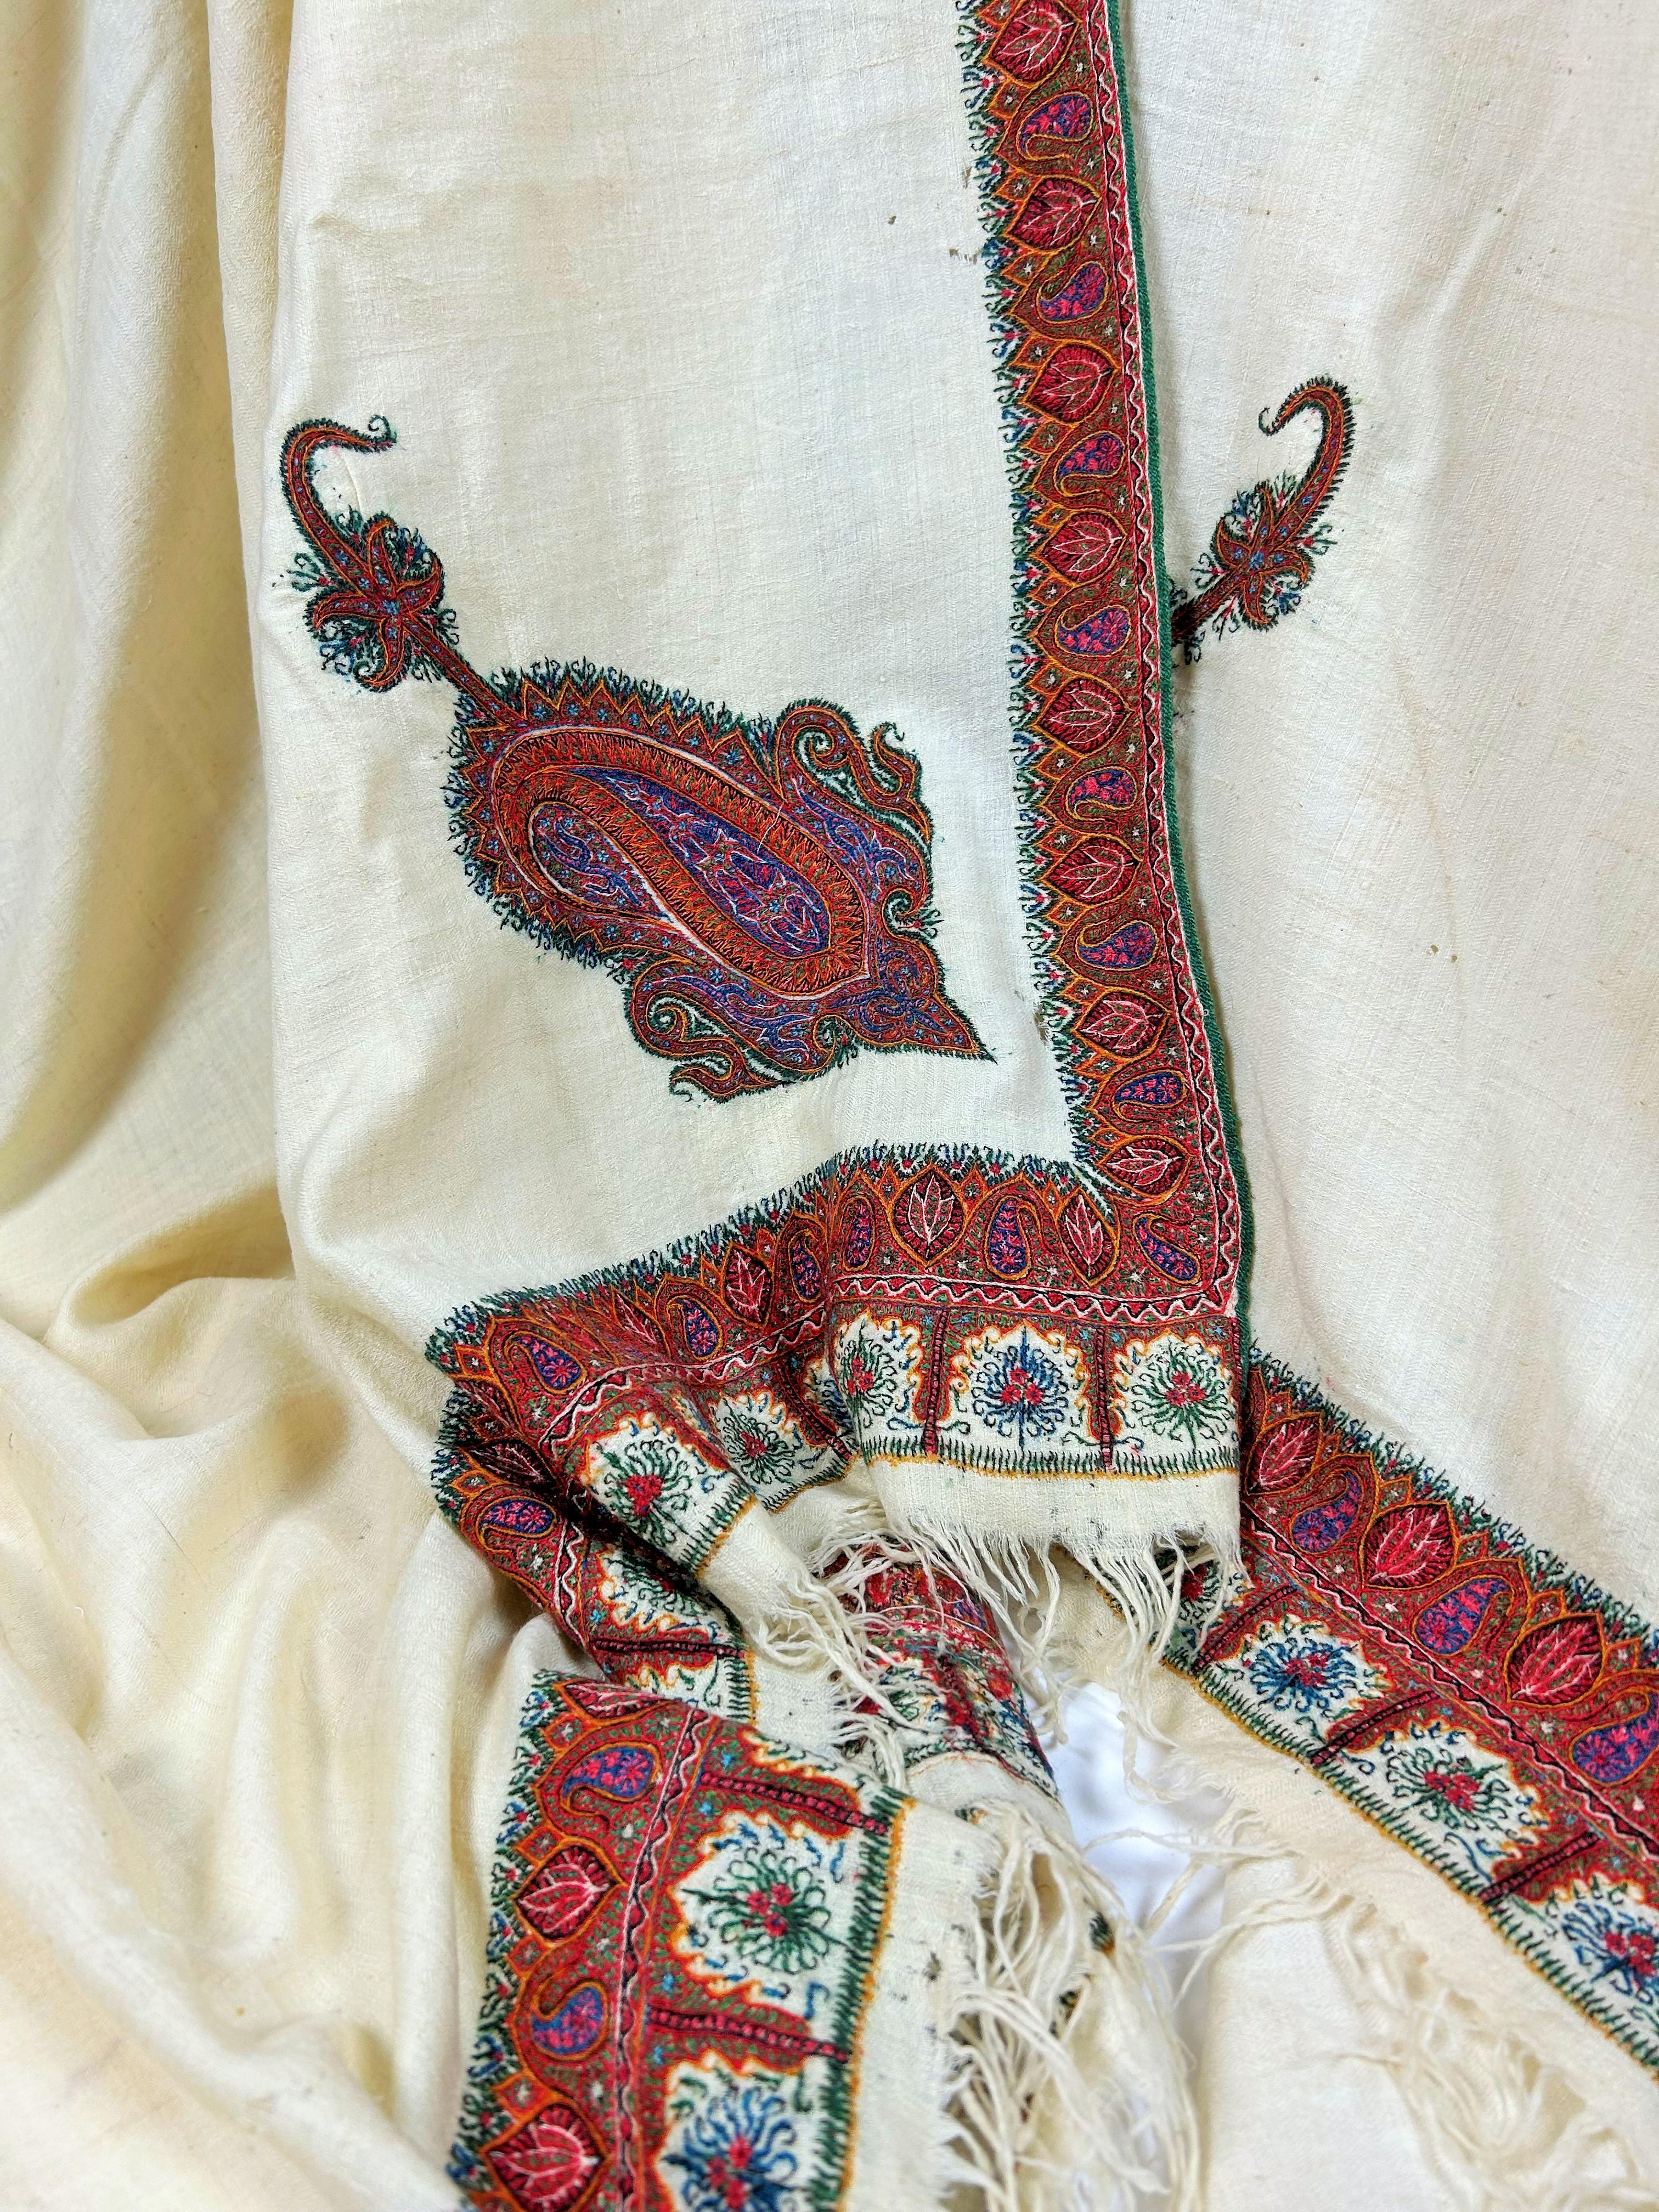 CIRCA 1880
Indien für den heimischen Markt oder Persien

Sehr langer bestickter Schal auf cremefarbenem Pashmina-Fond, bekannt als Amlikar. Großer Vorrat an sehr feinen tibetischen Ziegendaunen, sehr dicht in Fischgrätköper gewebt. Eingerahmt von